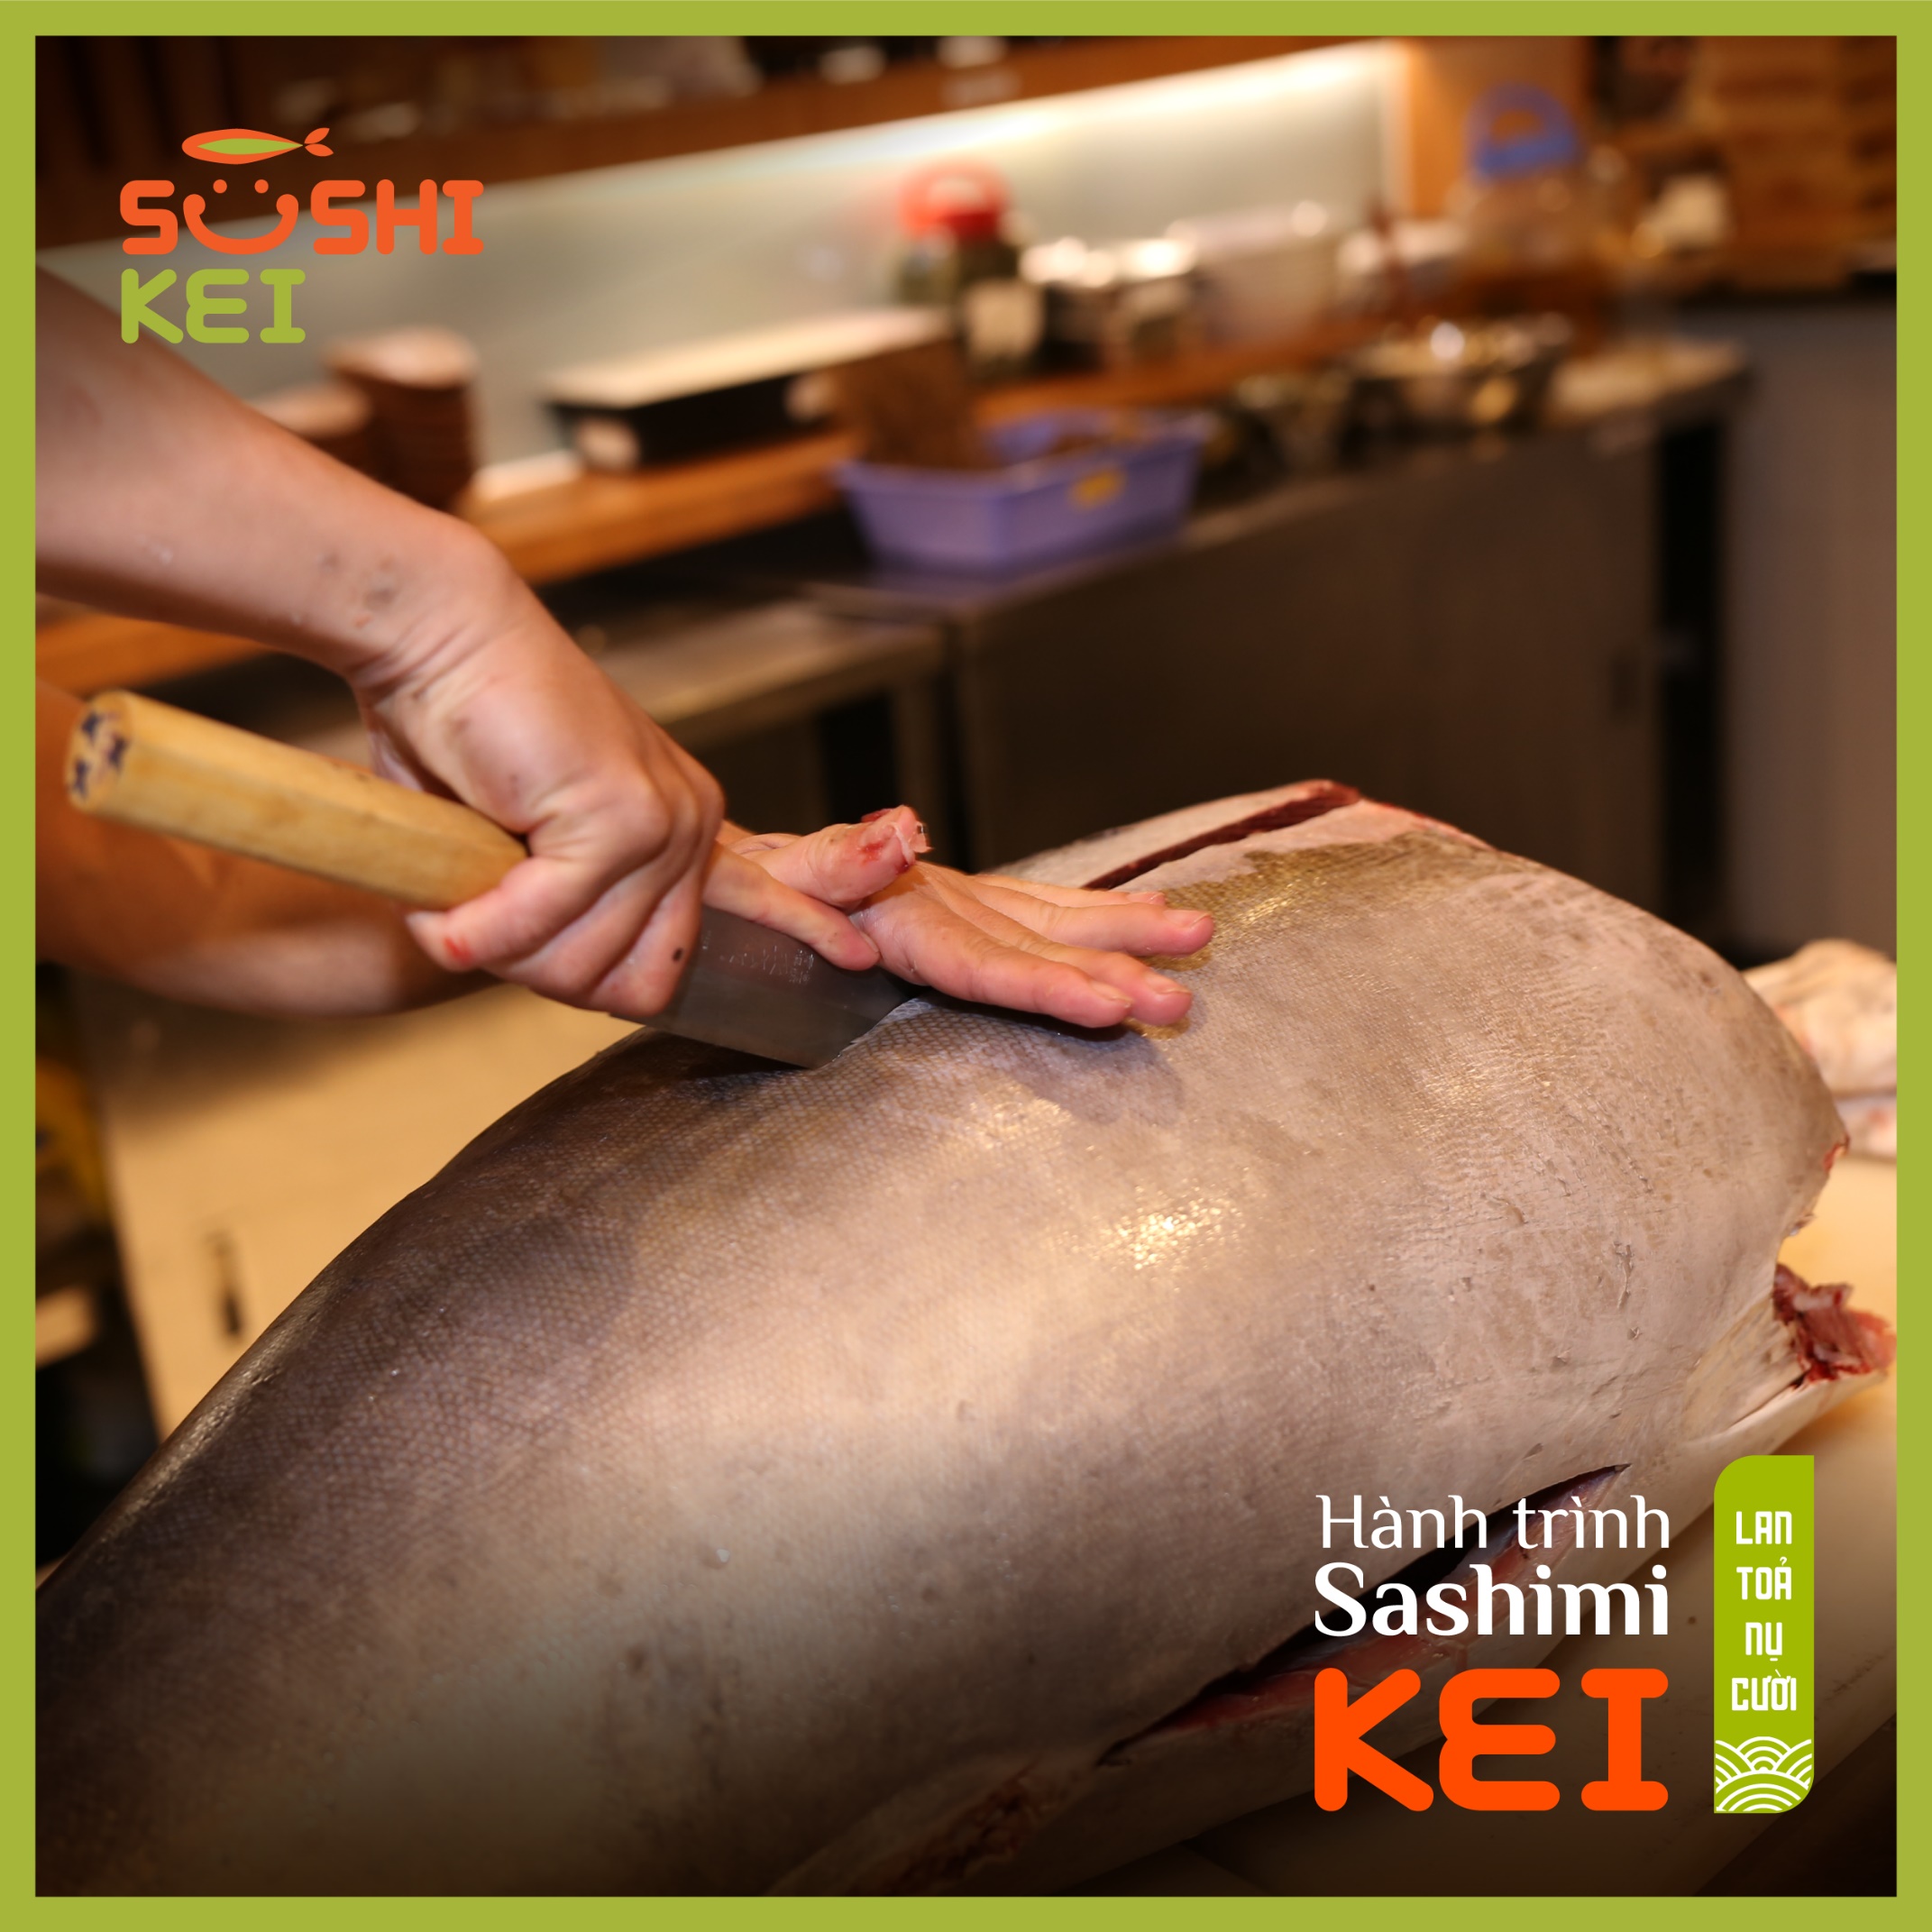 Kinh ngạc với cá ngừ khổng lồ 80kg cùng màn trình diễn chế biến chuyên nghiệp ngay tại nhà hàng Nhật - Sushi Kei - Ảnh 1.